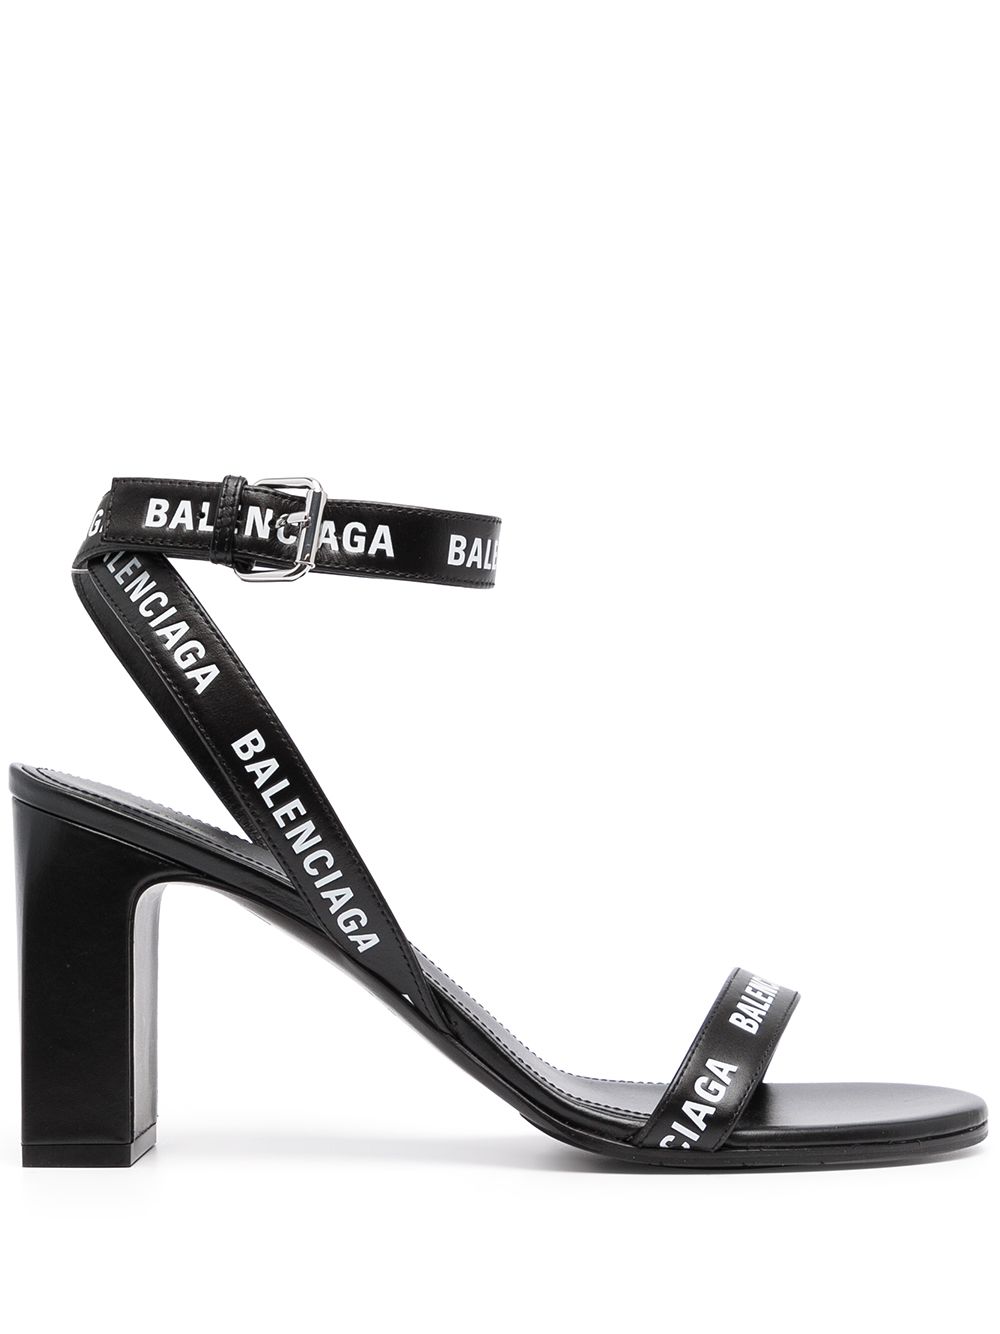 фото Balenciaga босоножки с логотипом и открытым носком